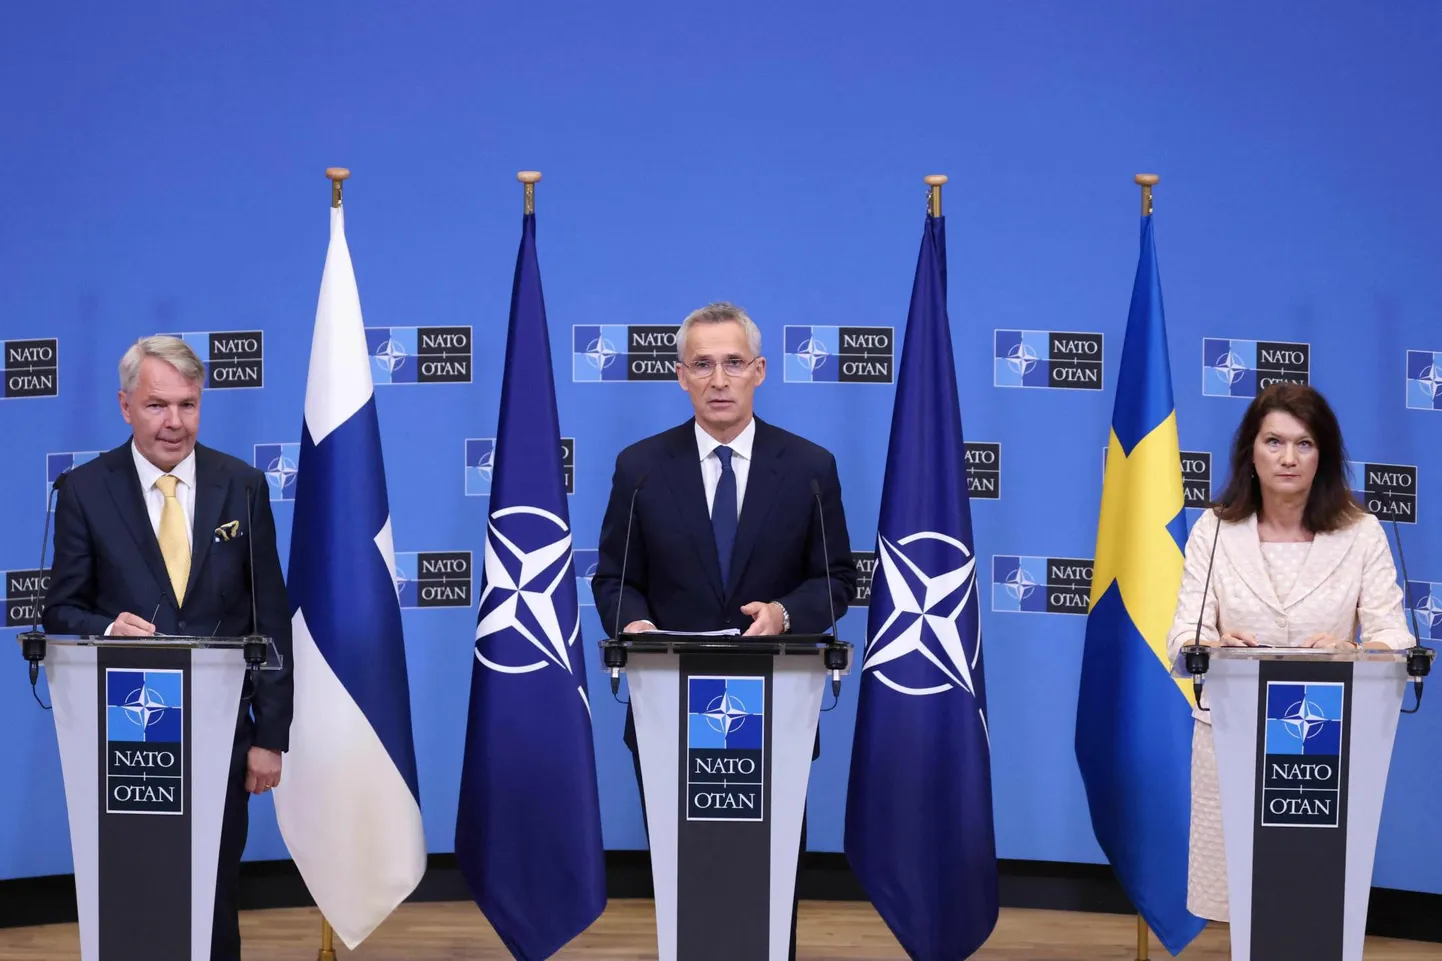 Soome ja Rootsi liitumine NATOga muudab Läänemere piirkonna sõjalist võimsust märkimisväärselt.